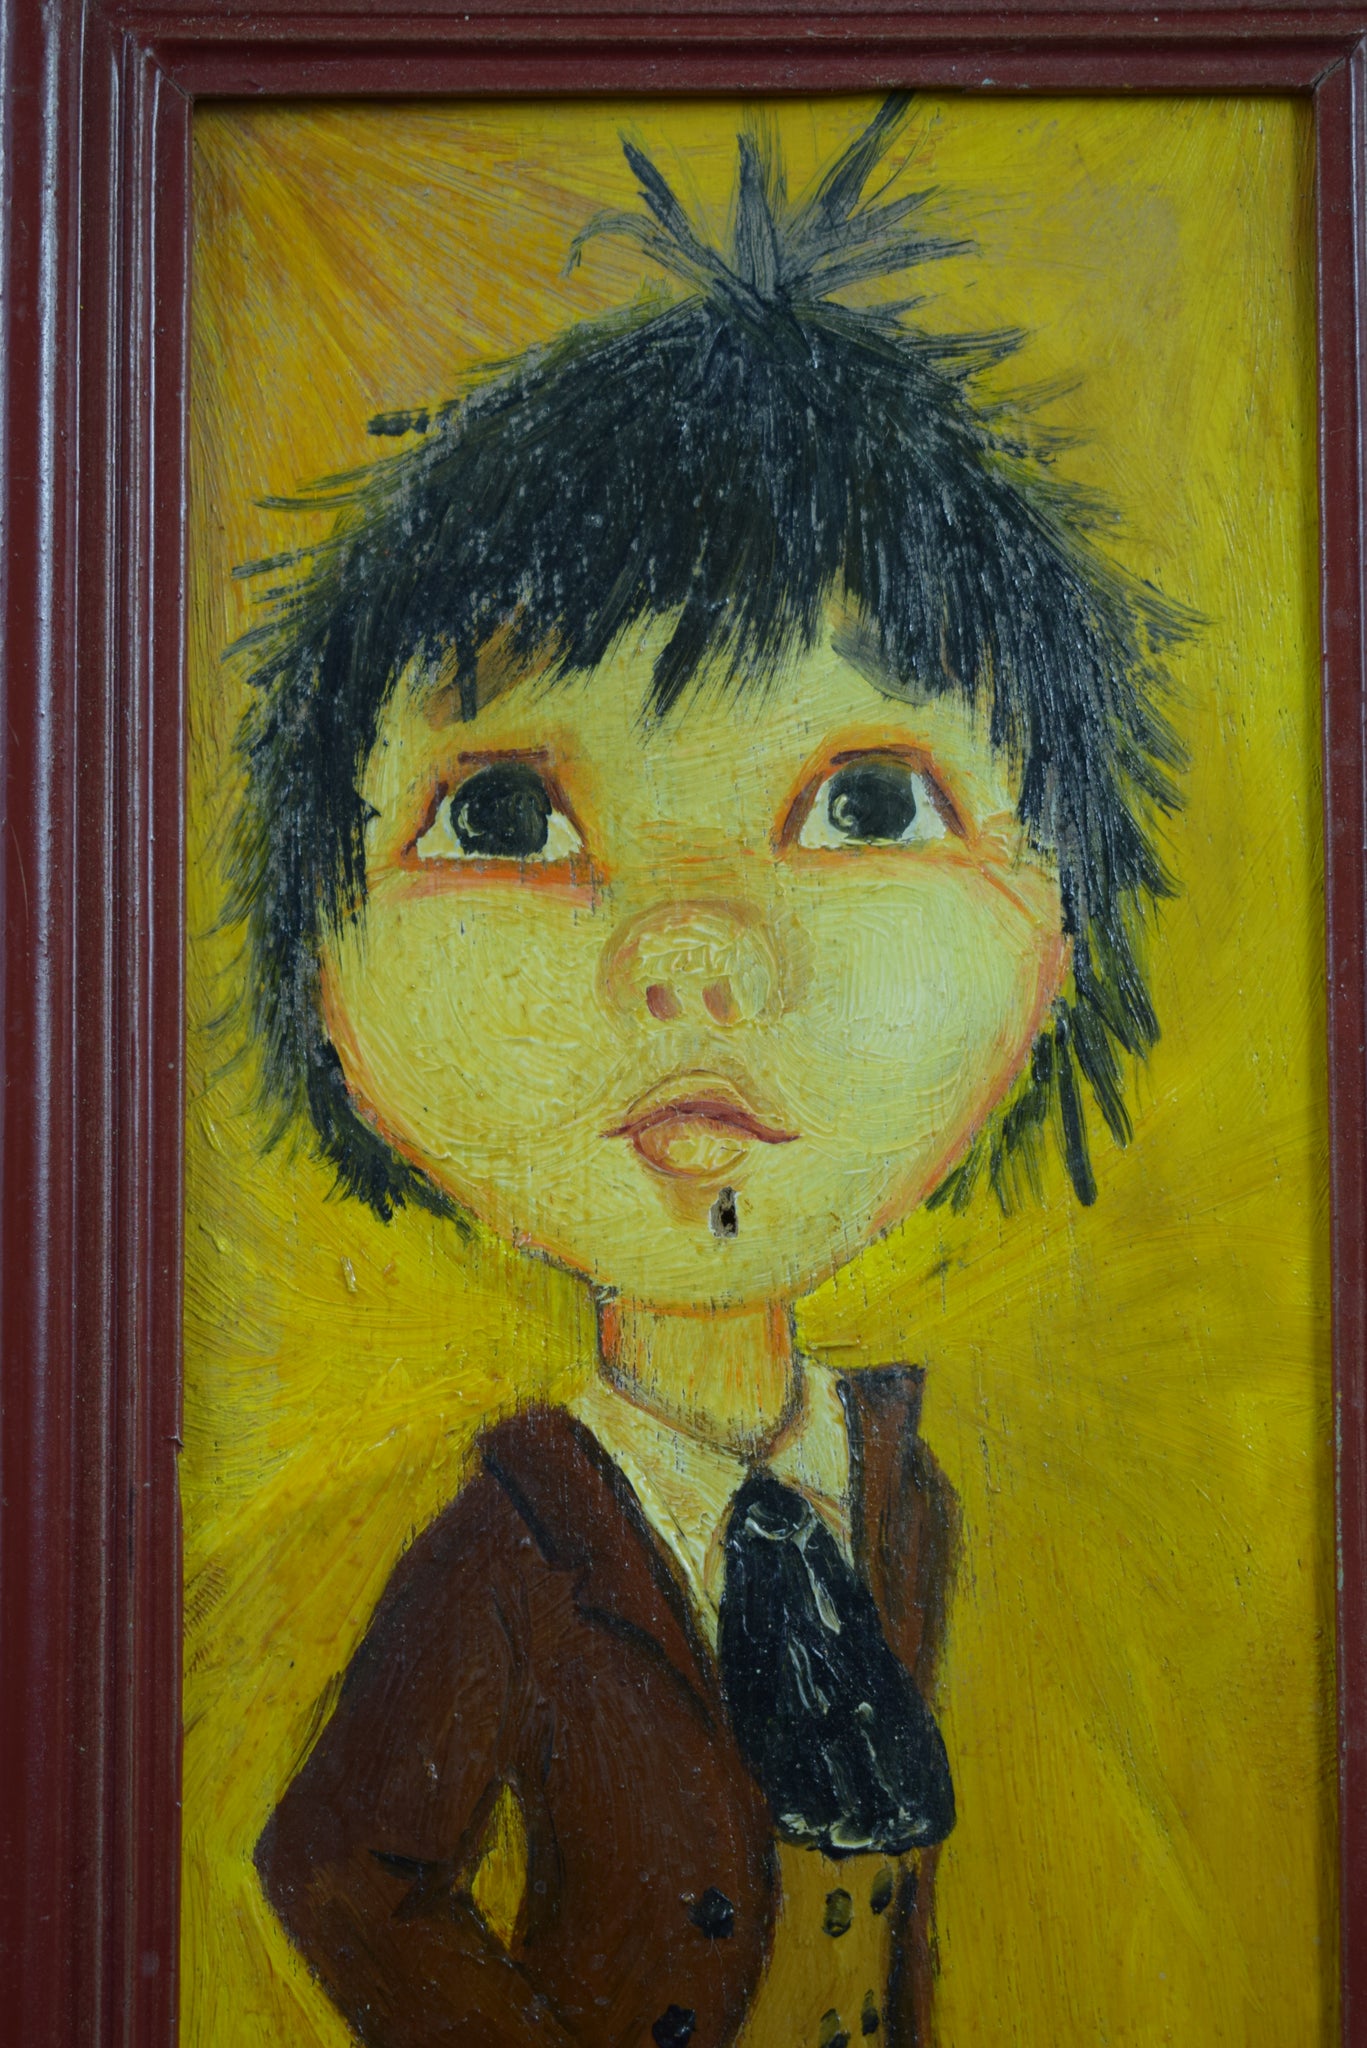 Oil painting humorous Paris Montmartre - Boy